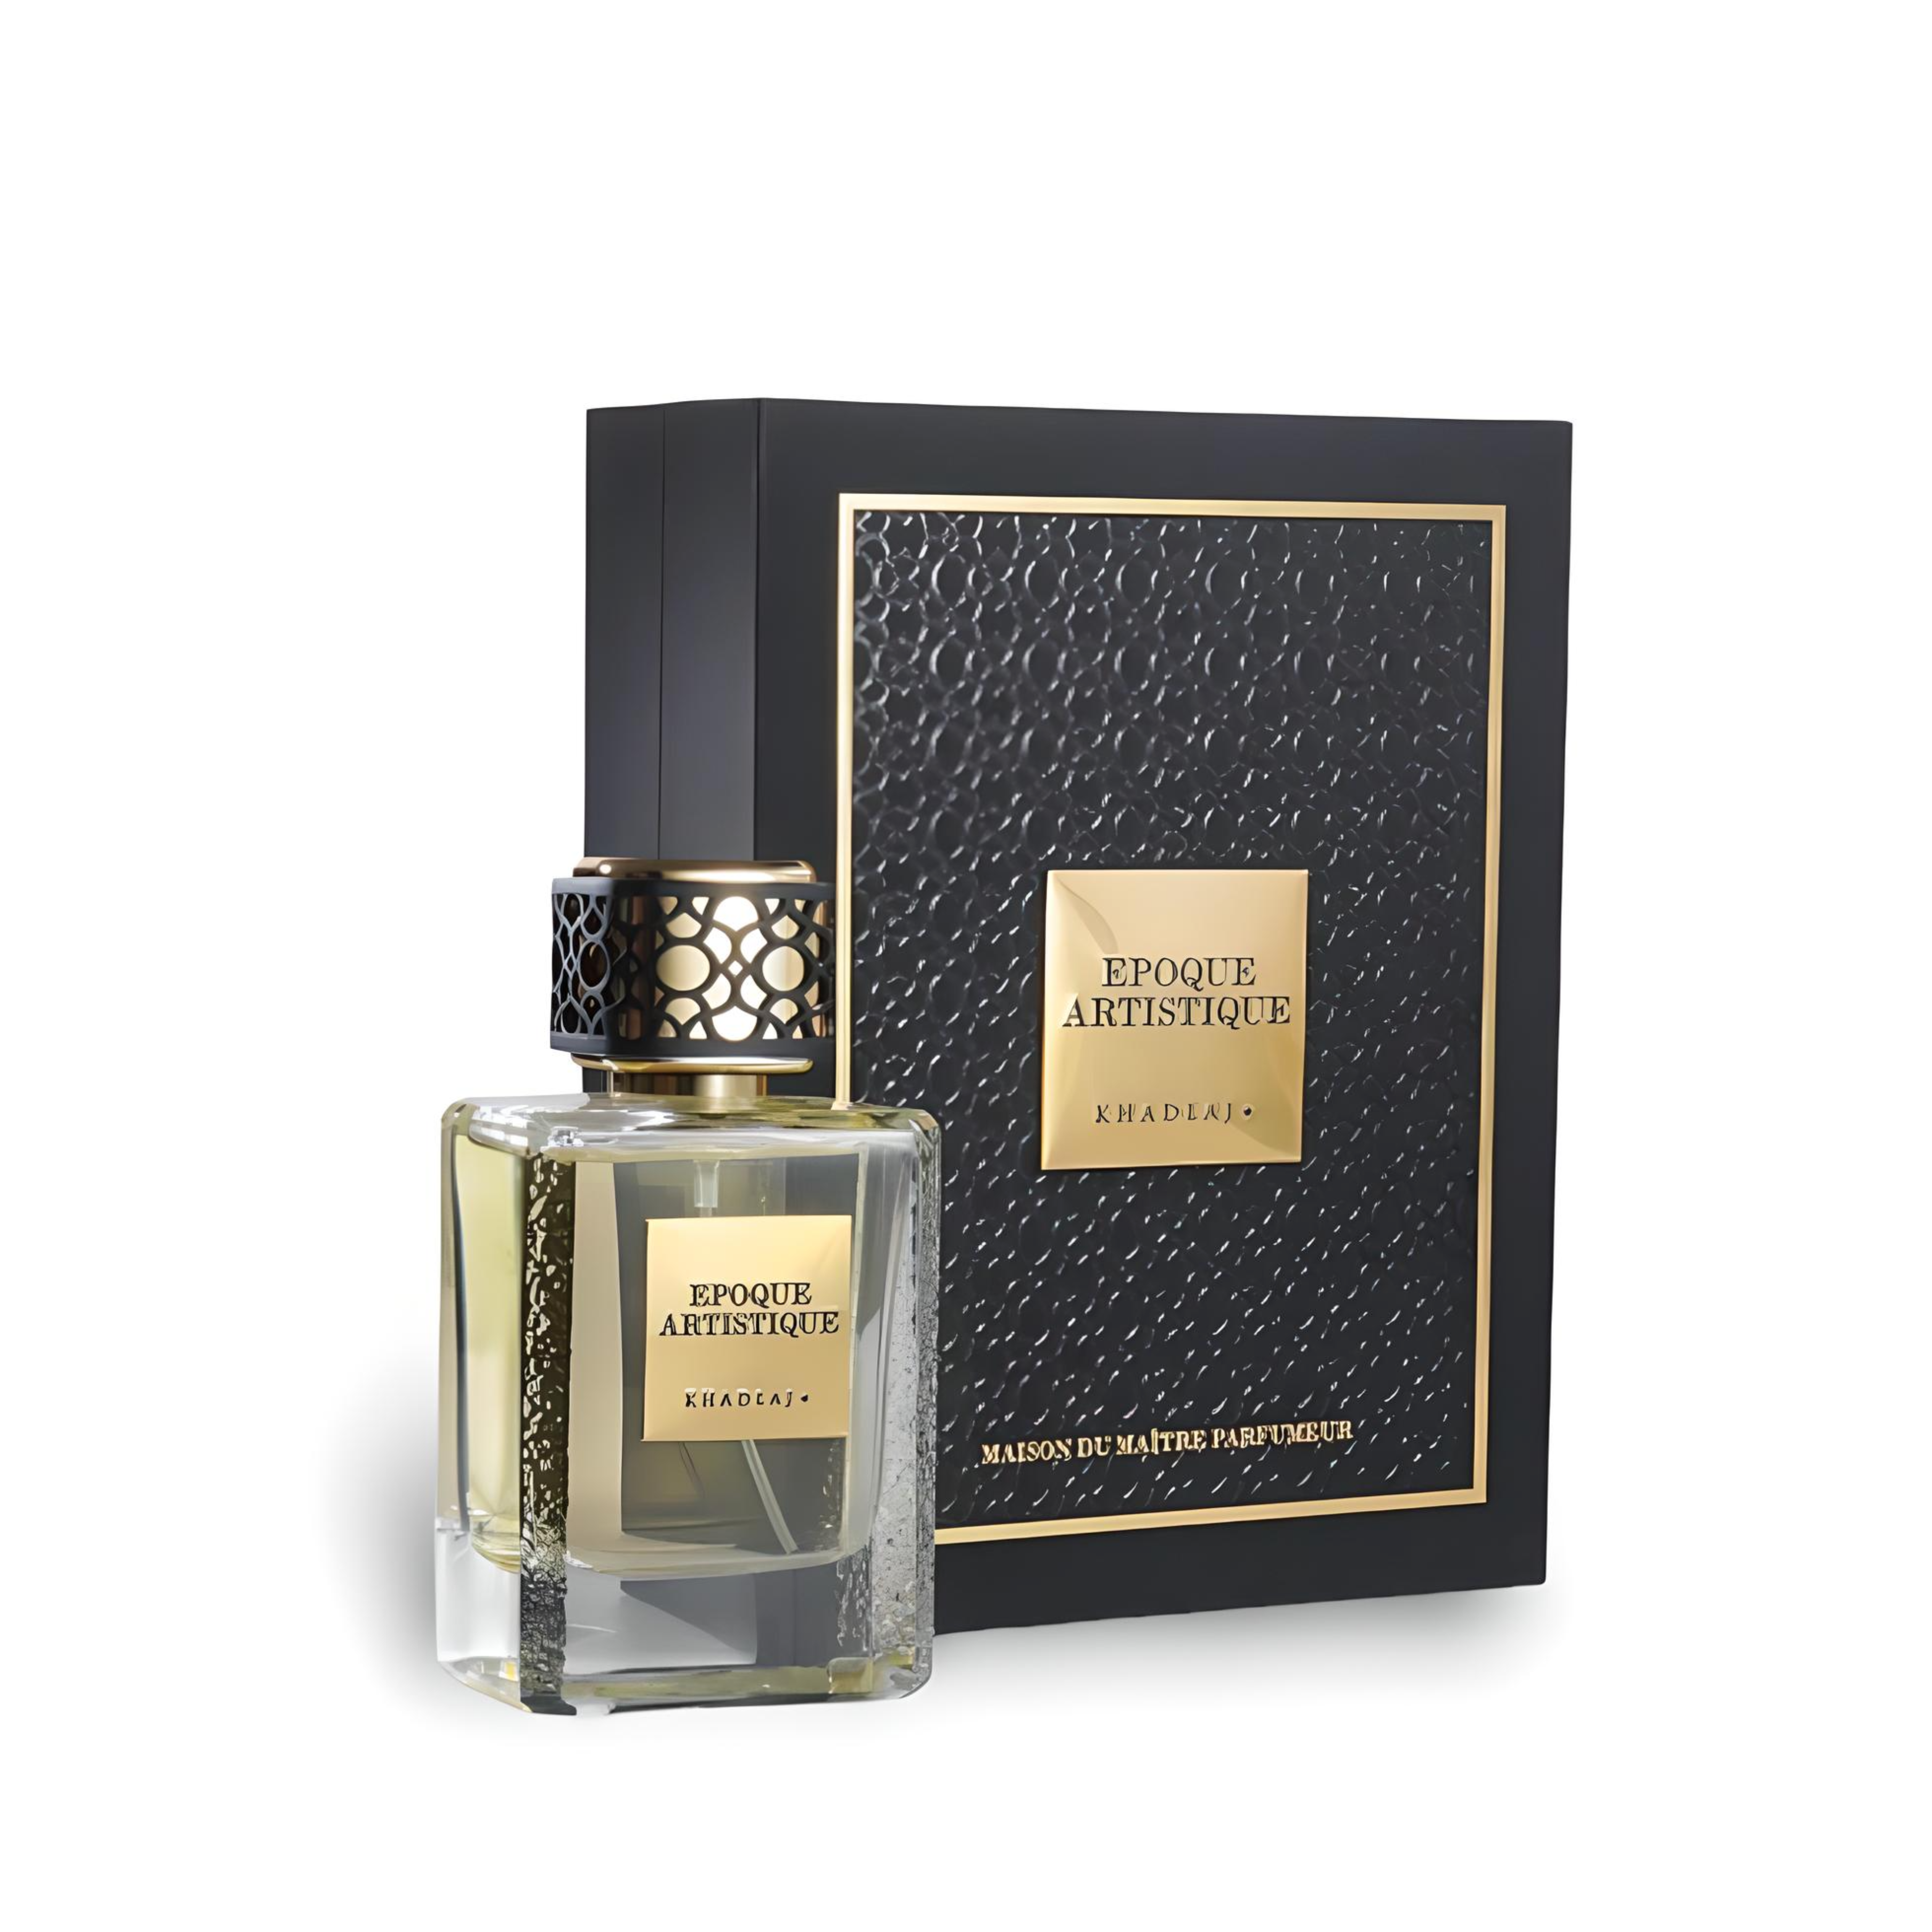 Maison Epoque Artistique Perfume / Eau De Parfum 100Ml By Khadlaj